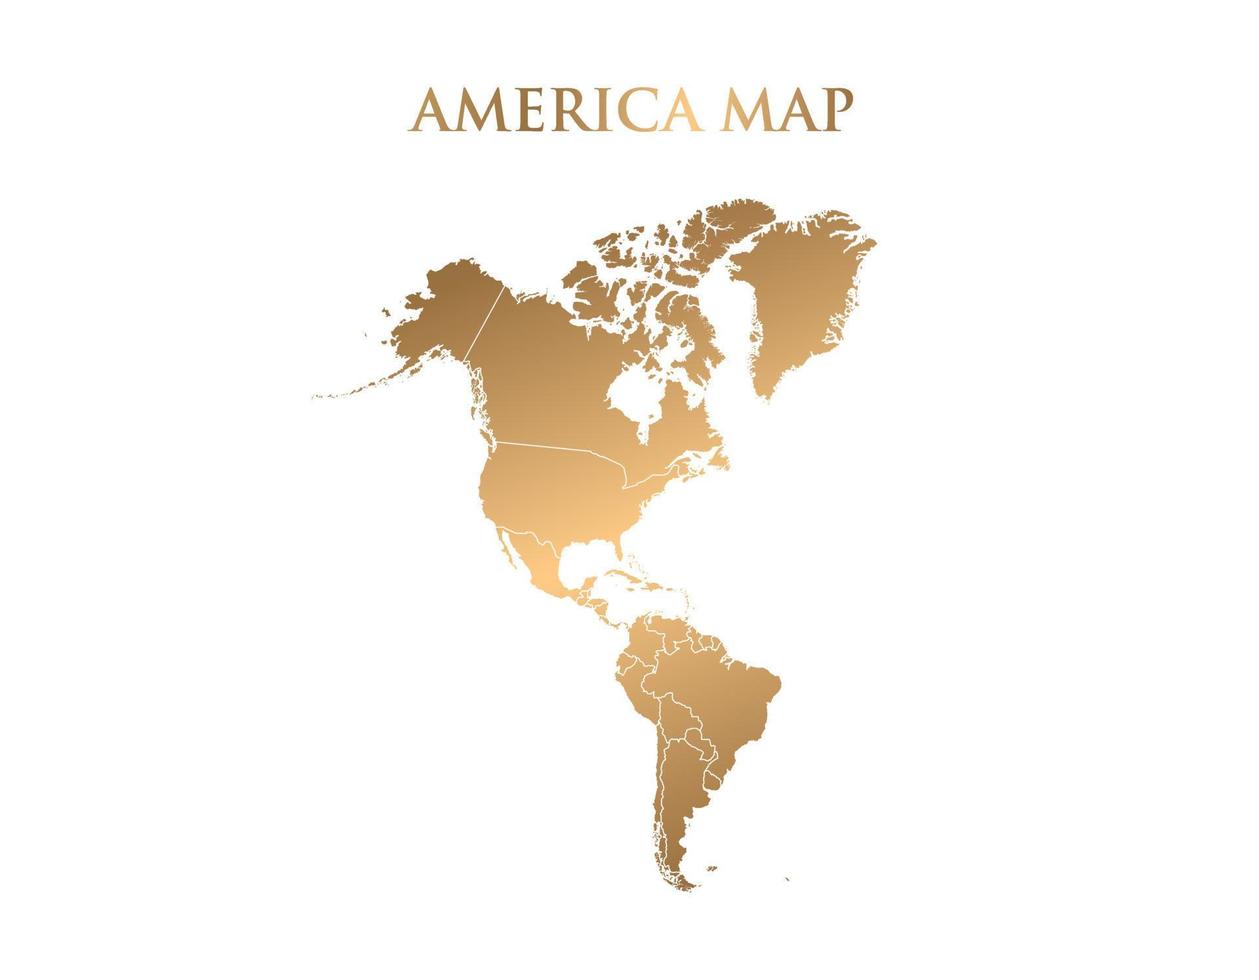 vetor mapa dourado da américa do sul. mapa da américa do sul é isolado em um fundo branco. mosaico de itens dourados com base no mapa amarelo sólido da américa do sul.